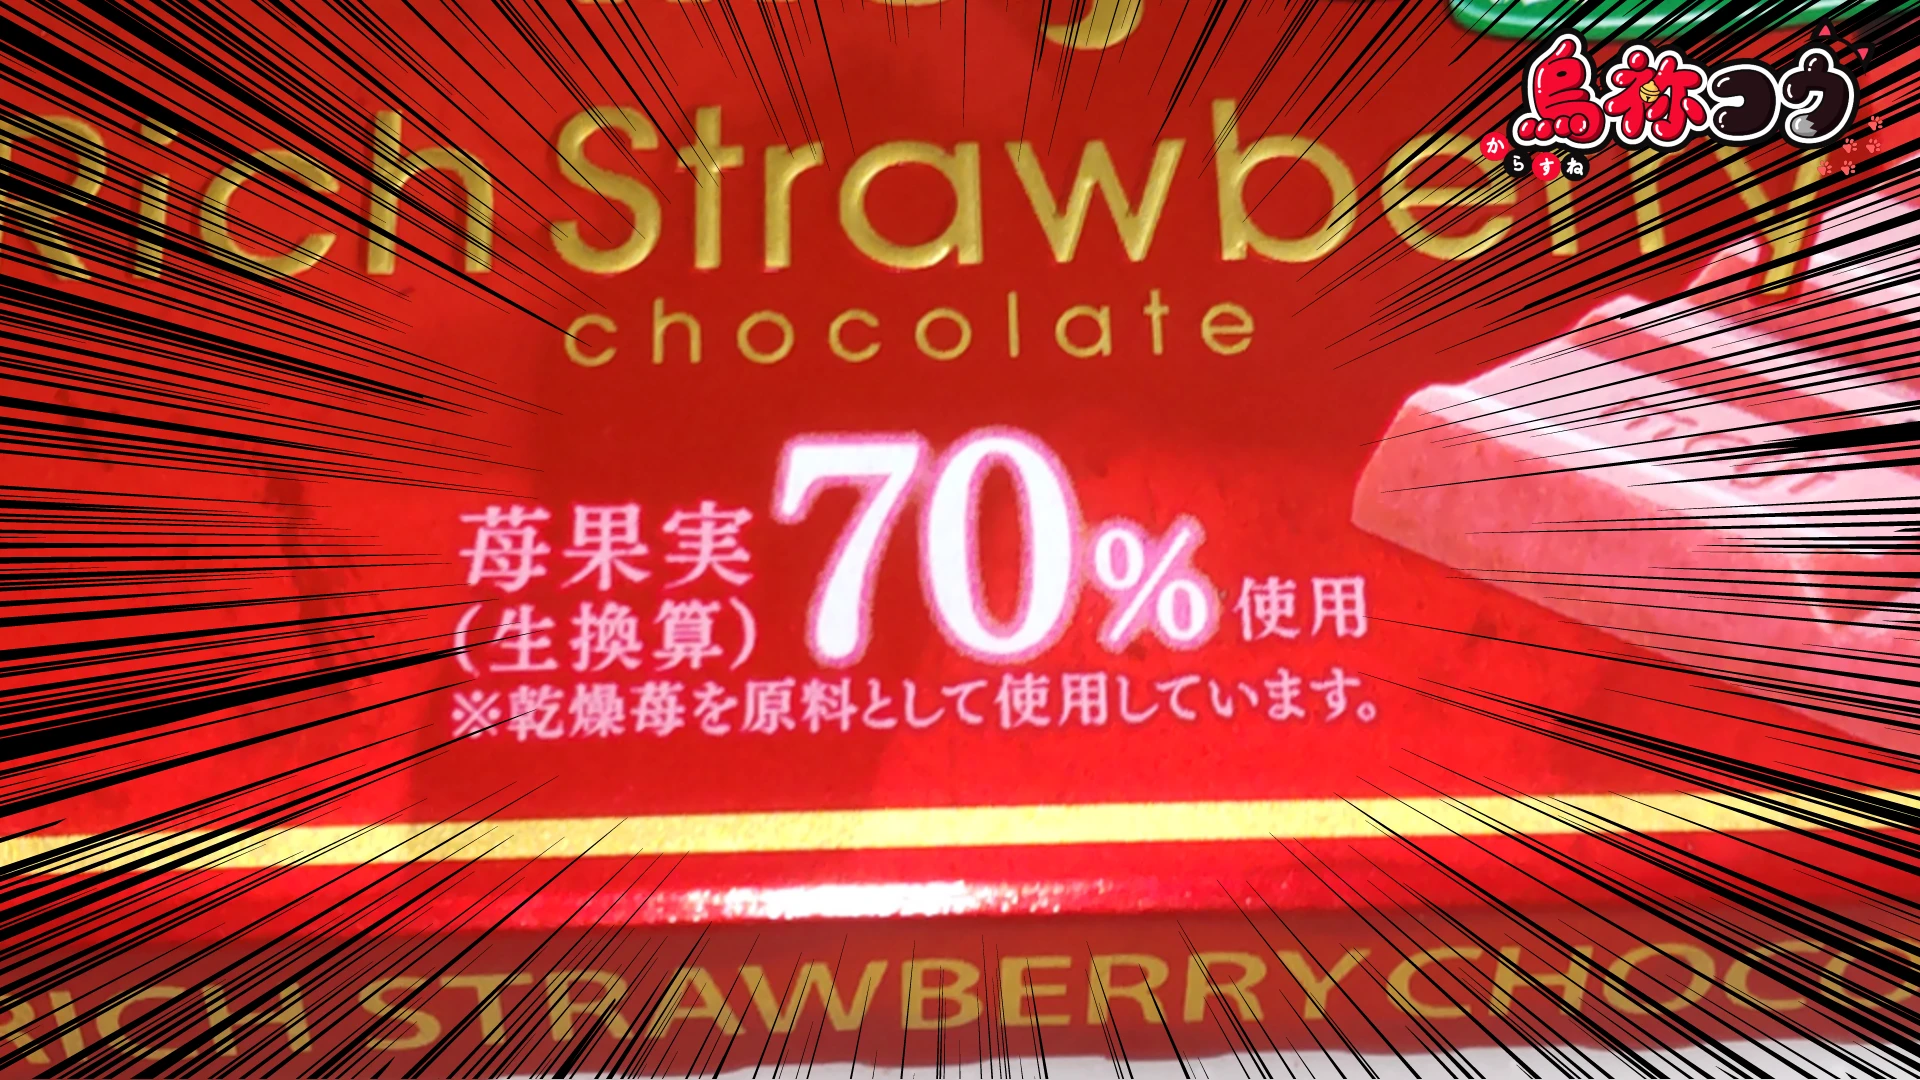 明治リッチストロベリーチョコレートの苺果実 70% 使用の表記